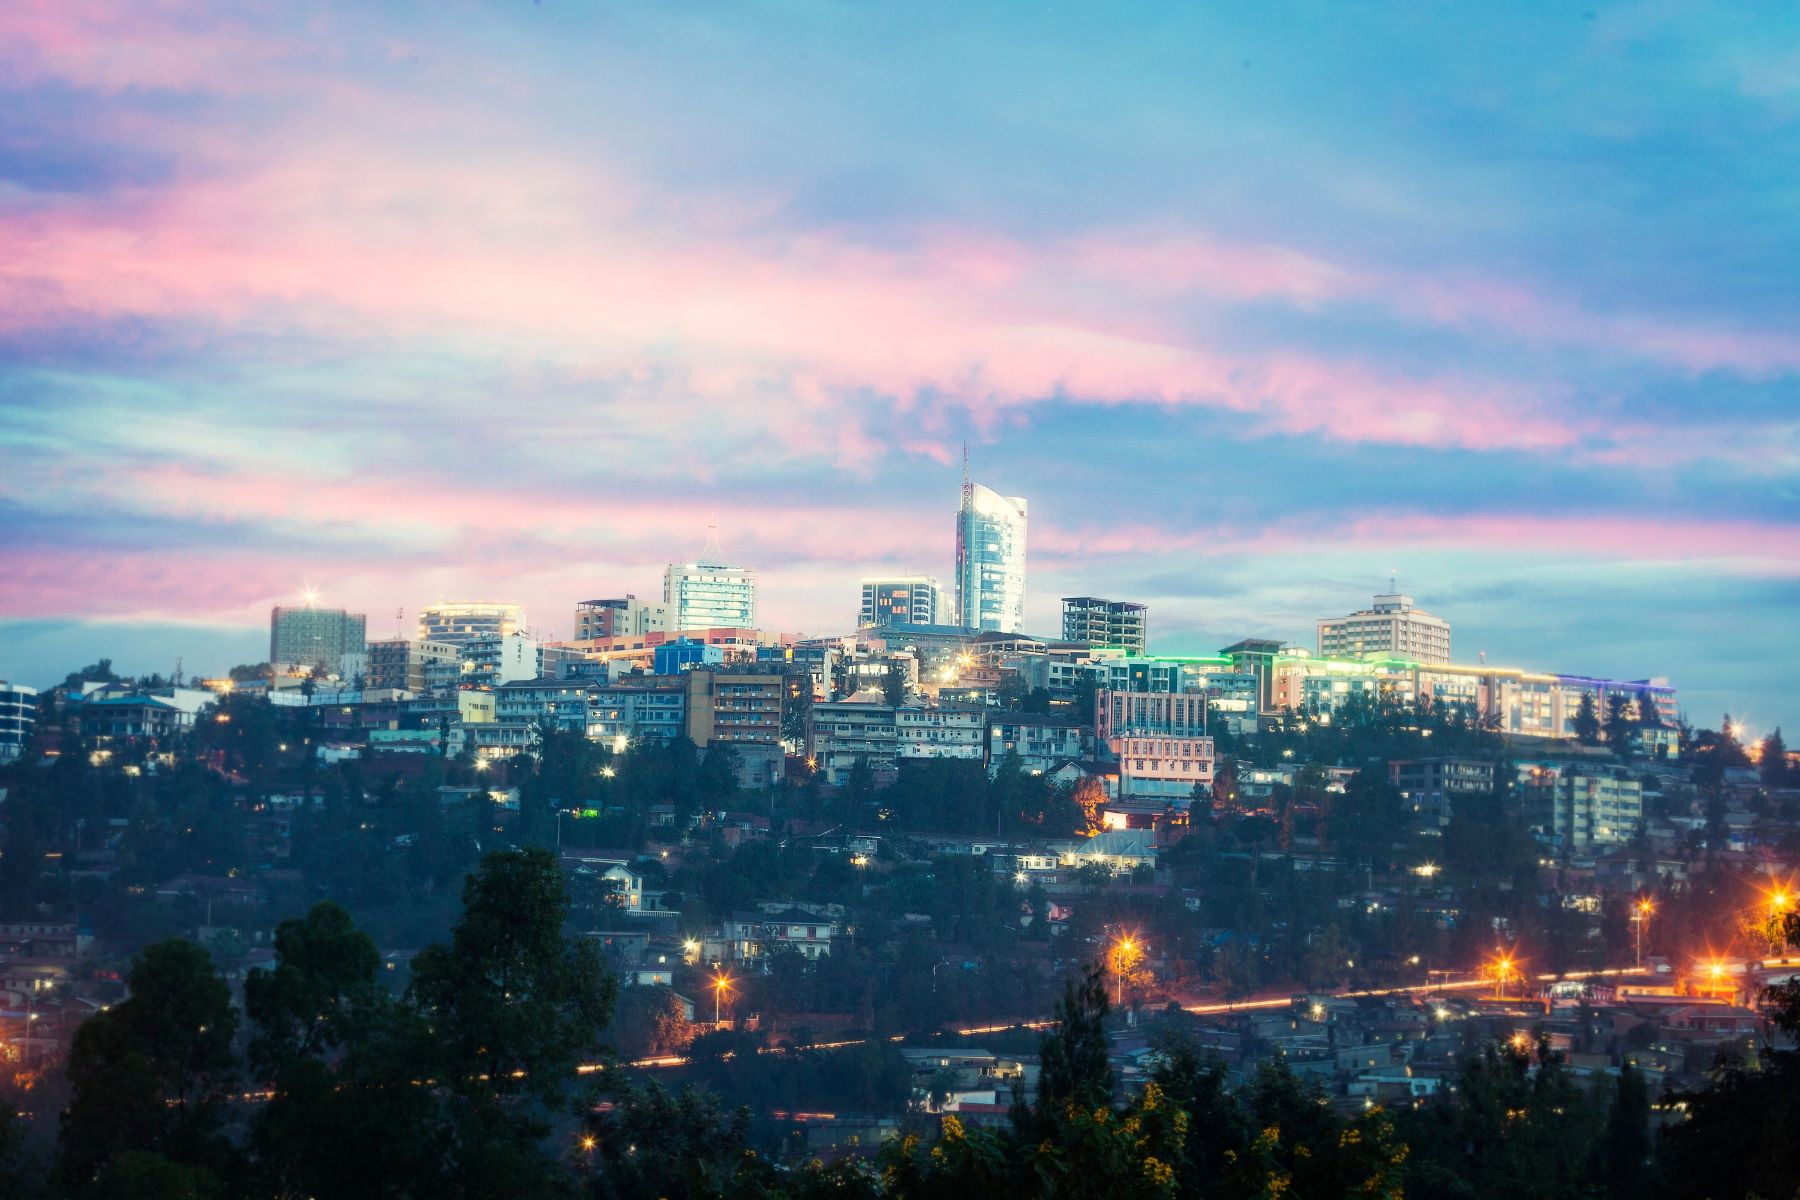 Photograph of Kigali, capital of Rwanda.